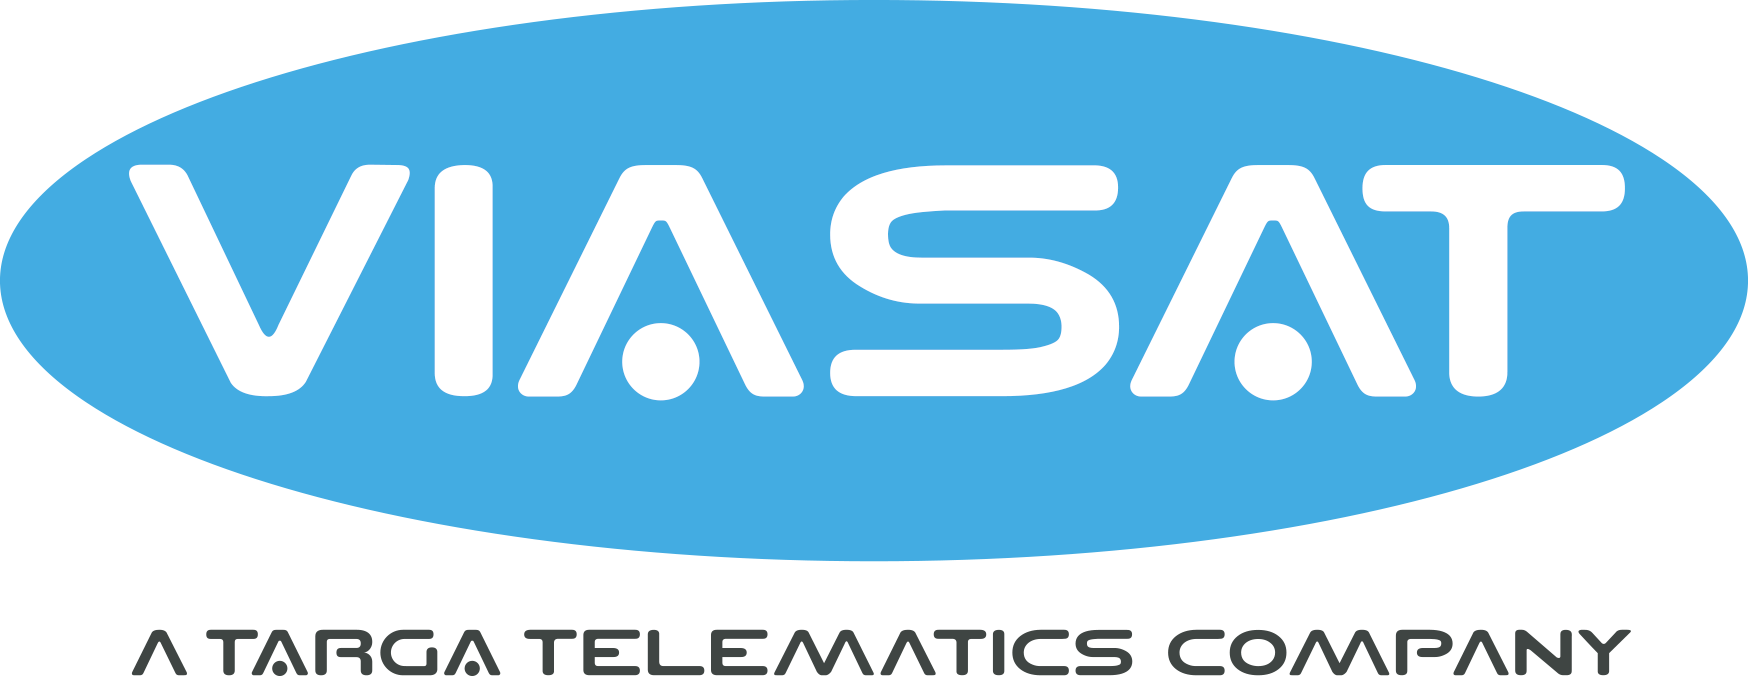 viasat telematics logo